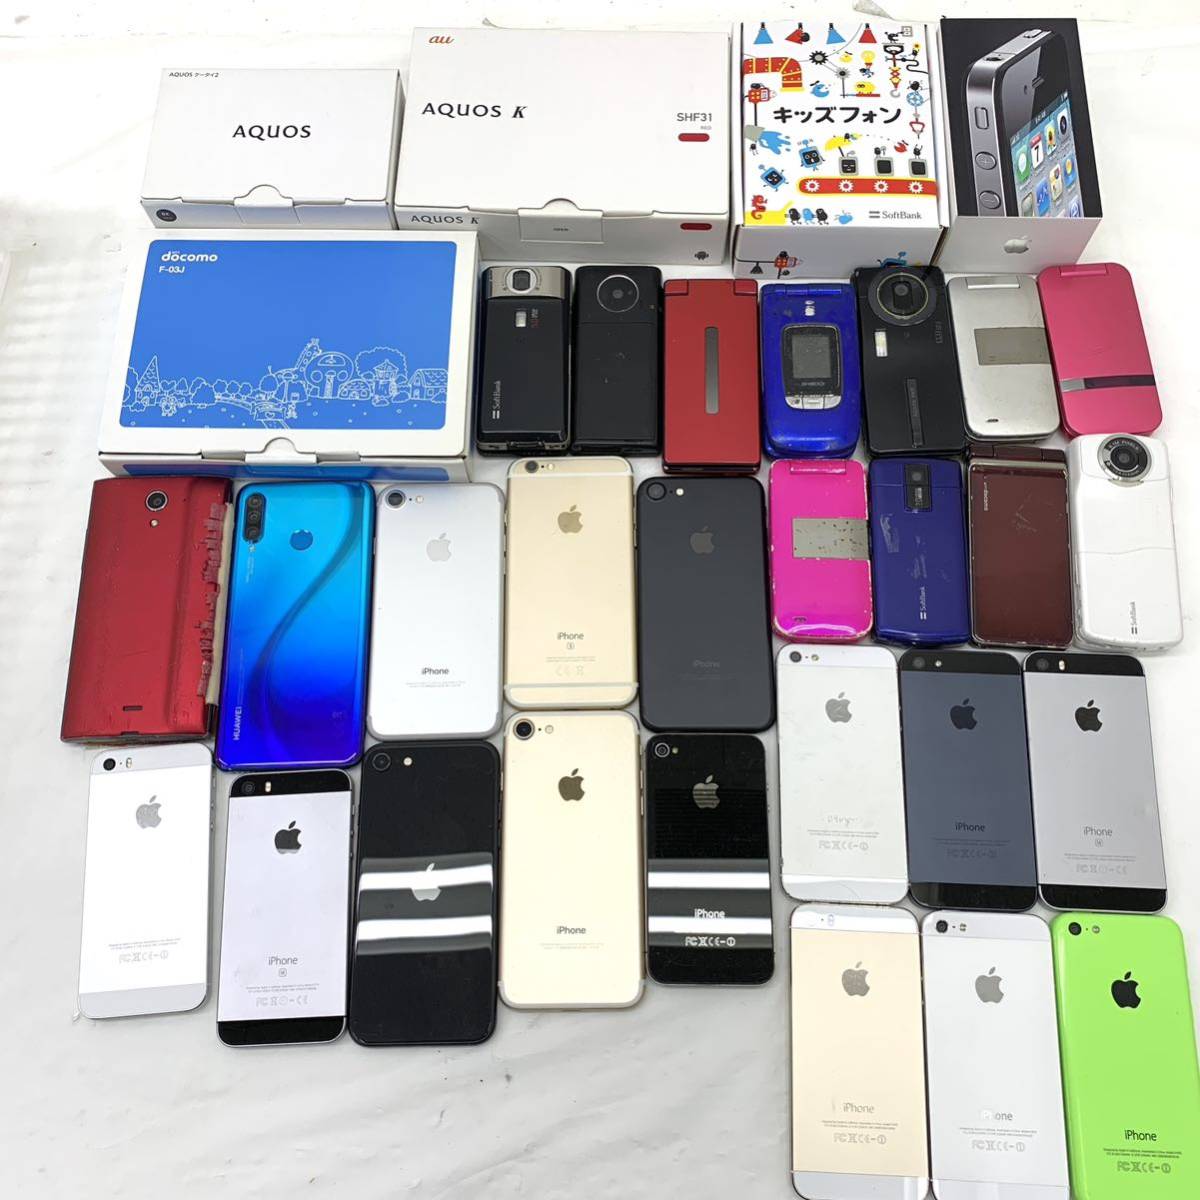 105H320☆スマートフォン/スマホ Android/iPhone 携帯 ガラケー まとめセット 動作未確認/ジャンク